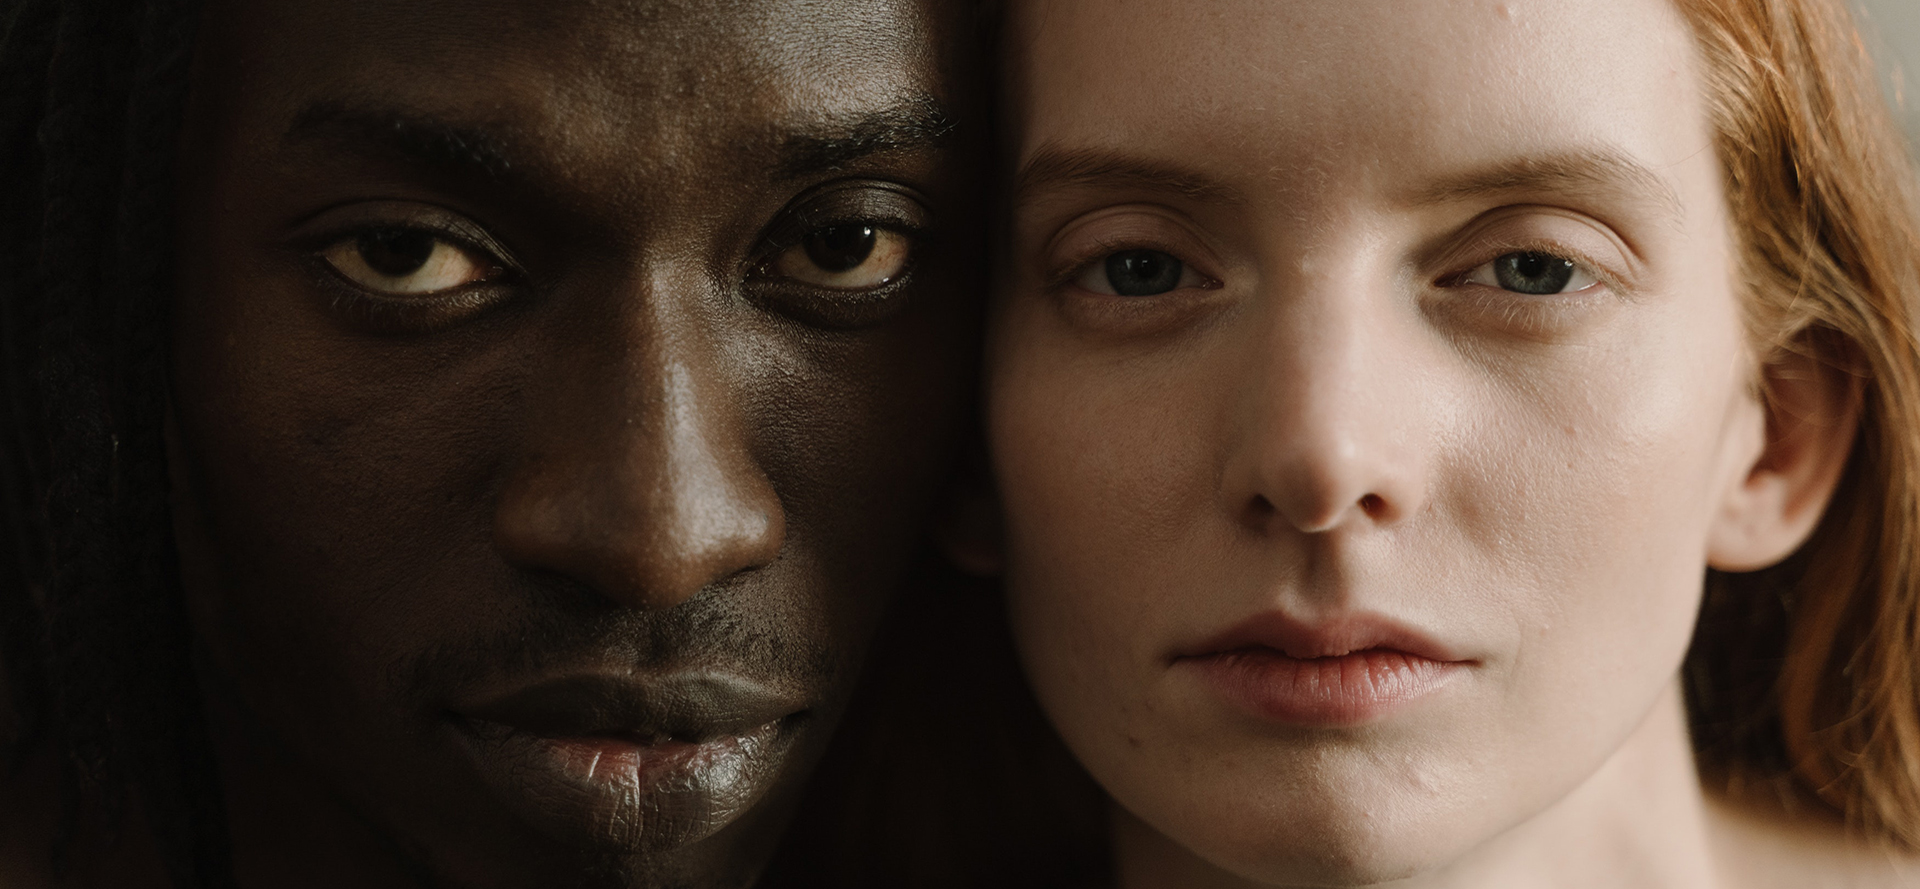 Um retrato cara a cara de um homem negro e de uma mulher branca.